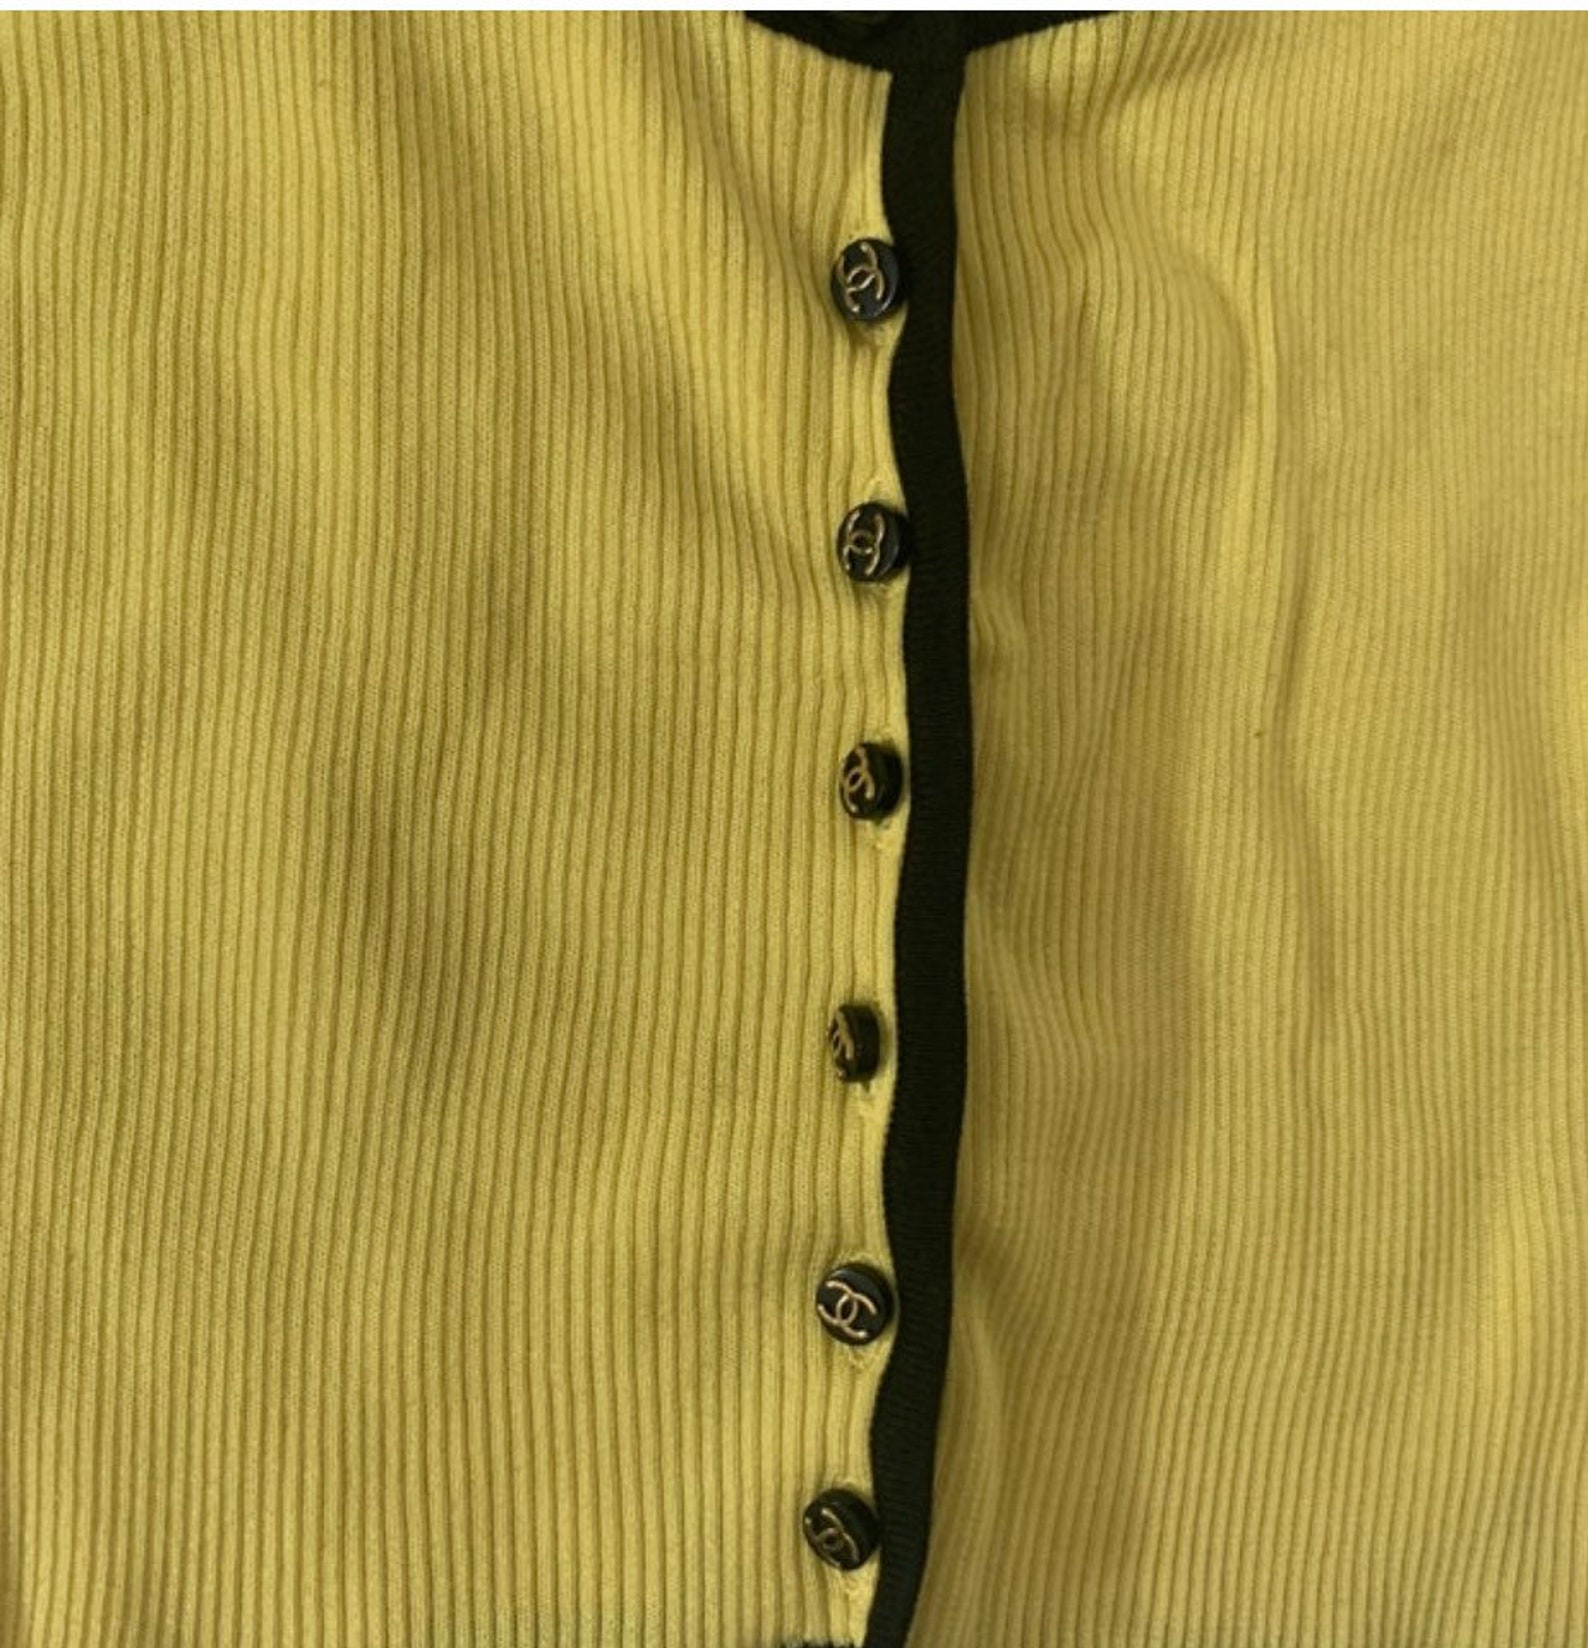 Vintage Chanel 1995 yellow crop top/cardigan | Etsy